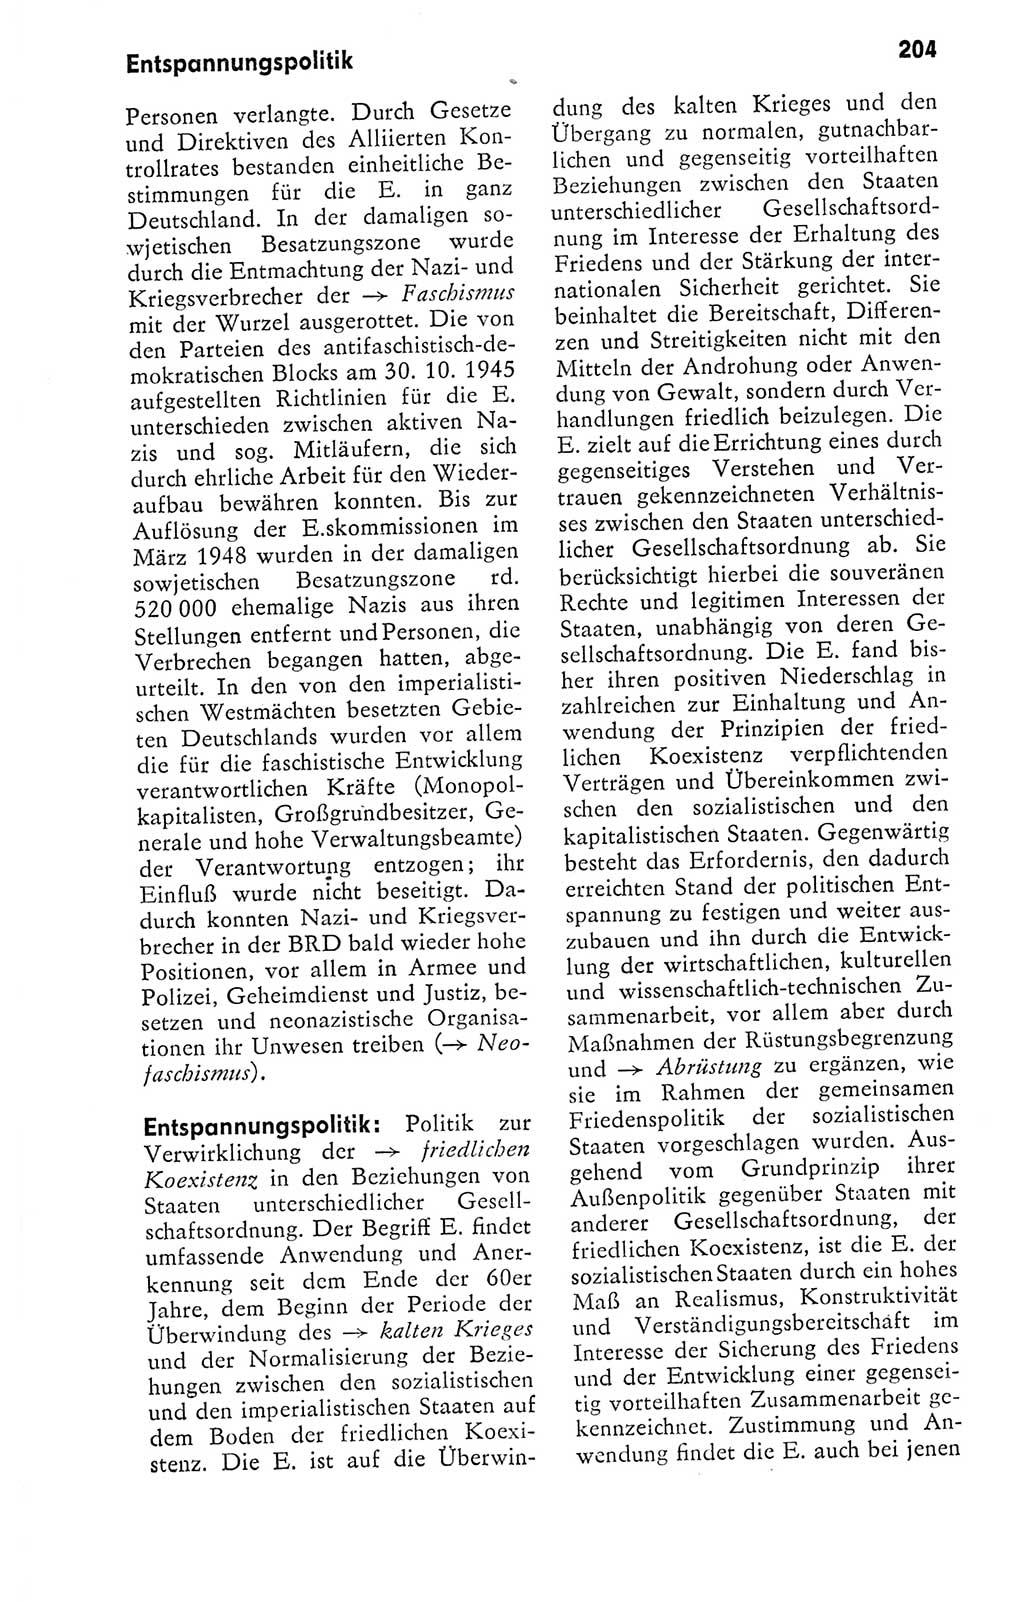 Kleines politisches Wörterbuch [Deutsche Demokratische Republik (DDR)] 1978, Seite 204 (Kl. pol. Wb. DDR 1978, S. 204)